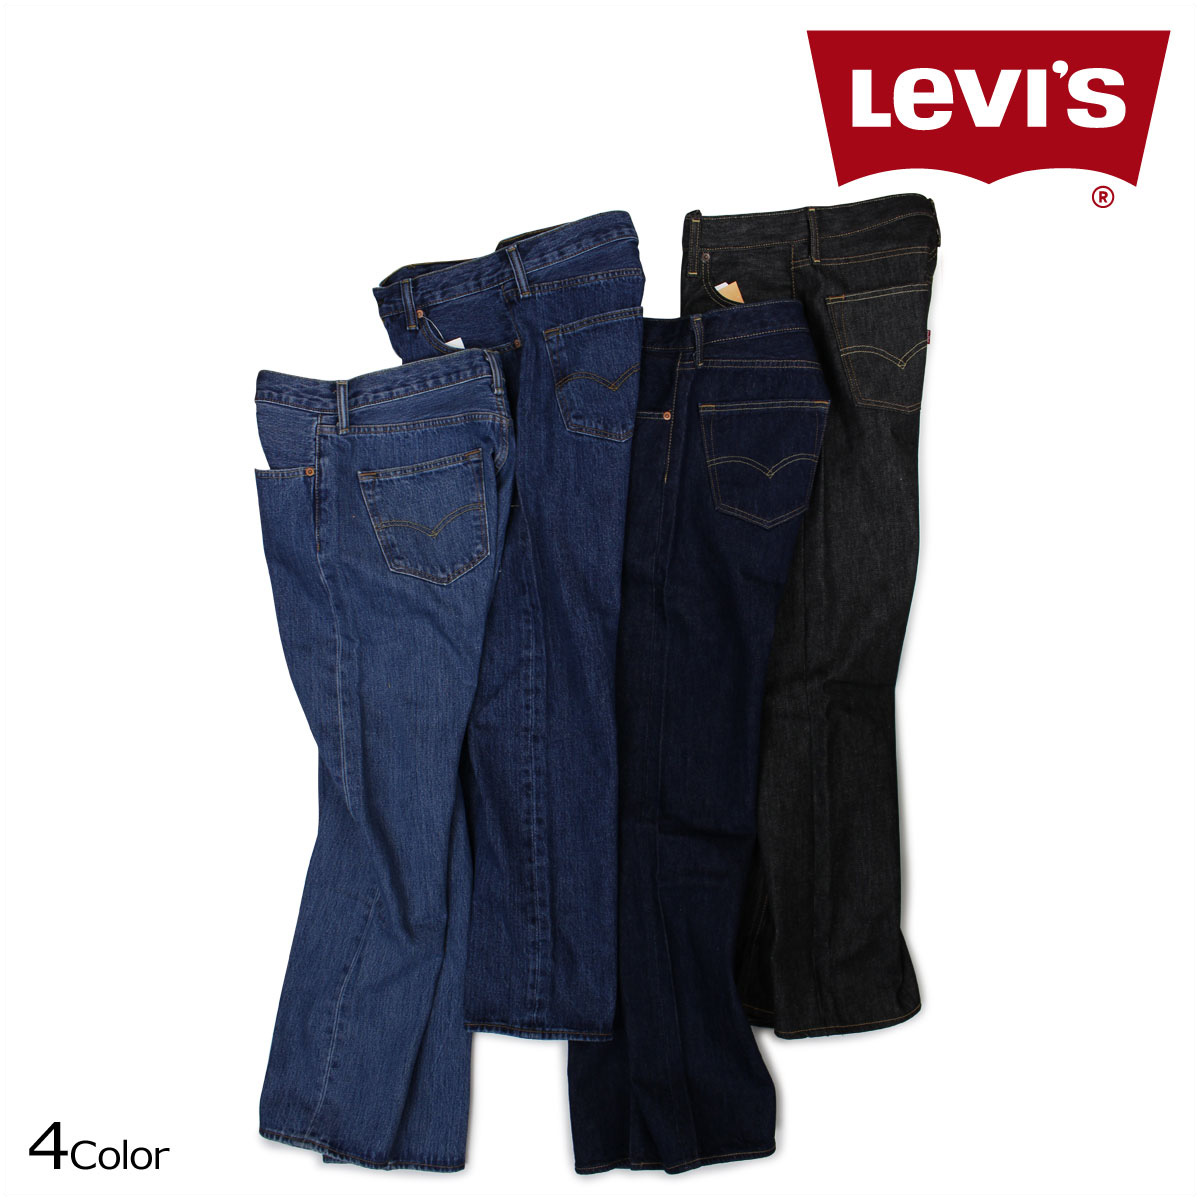 levis shop online